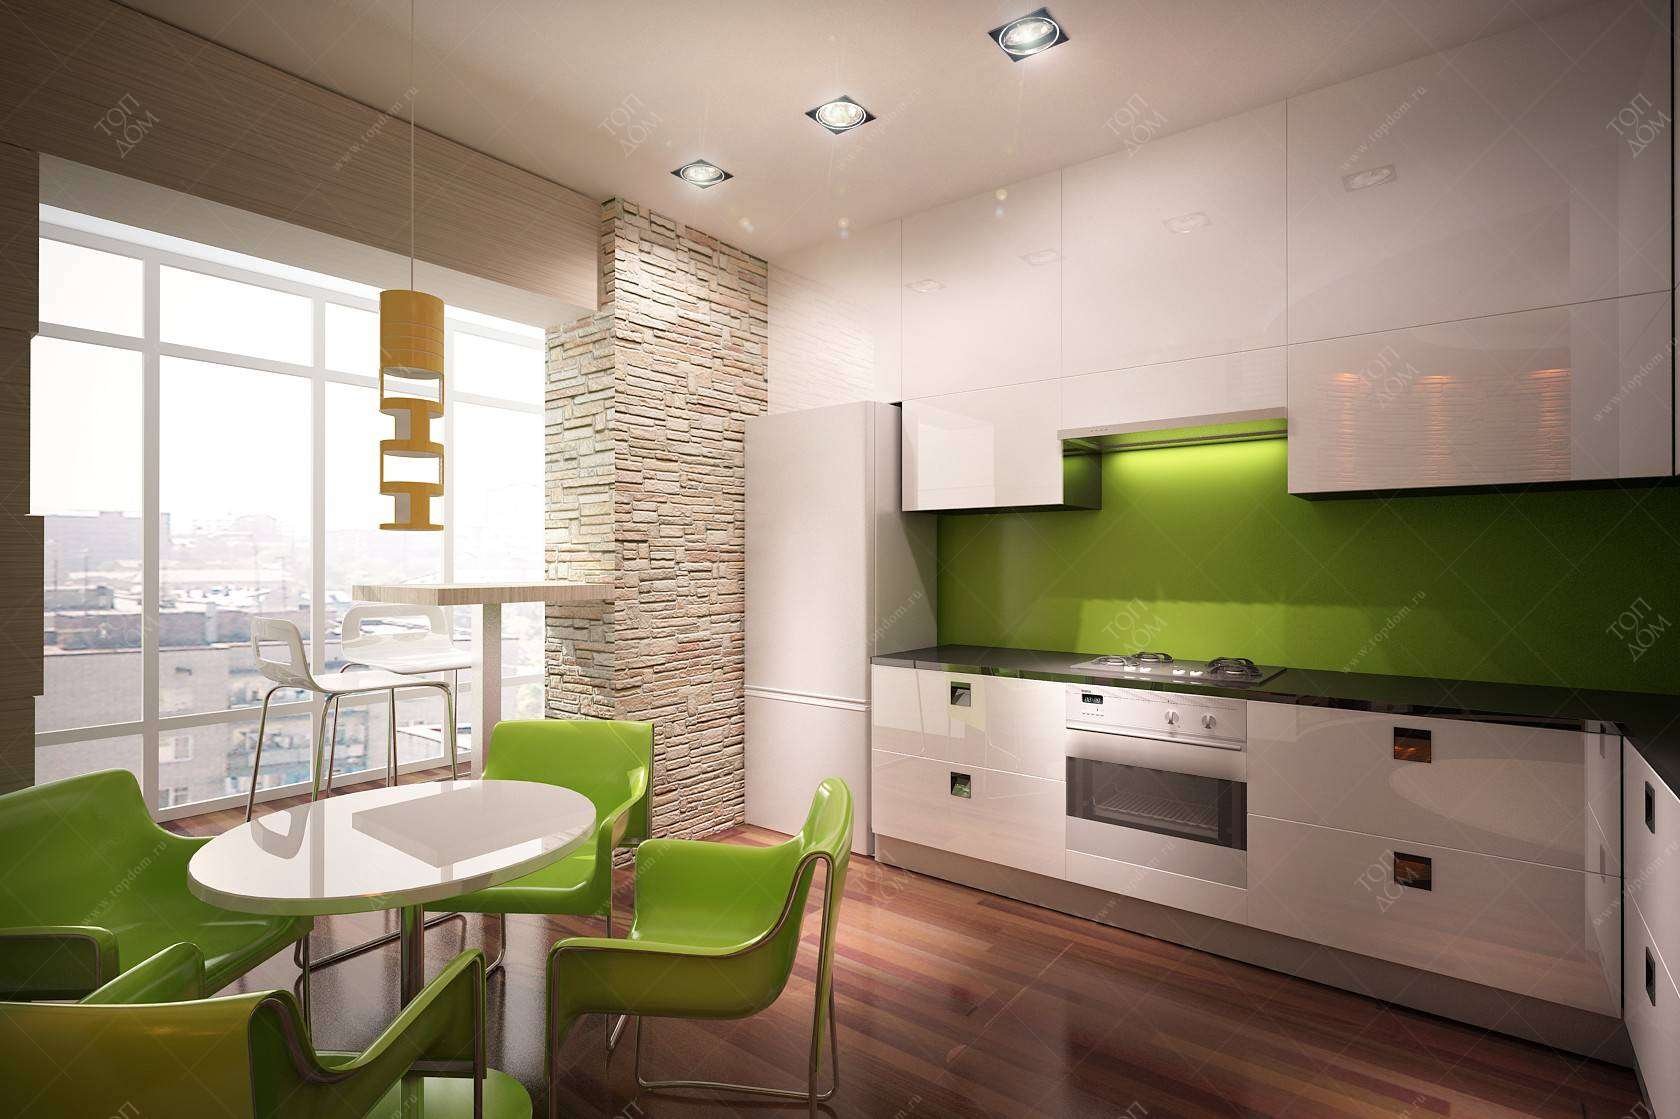 Купить однокомнатную квартиру в зеленом. Дизайнерский интерьер кухни. Интерьер кухни в квартире. Кухня в зелено-бежевых тонах. Красивые кухни в квартирах.